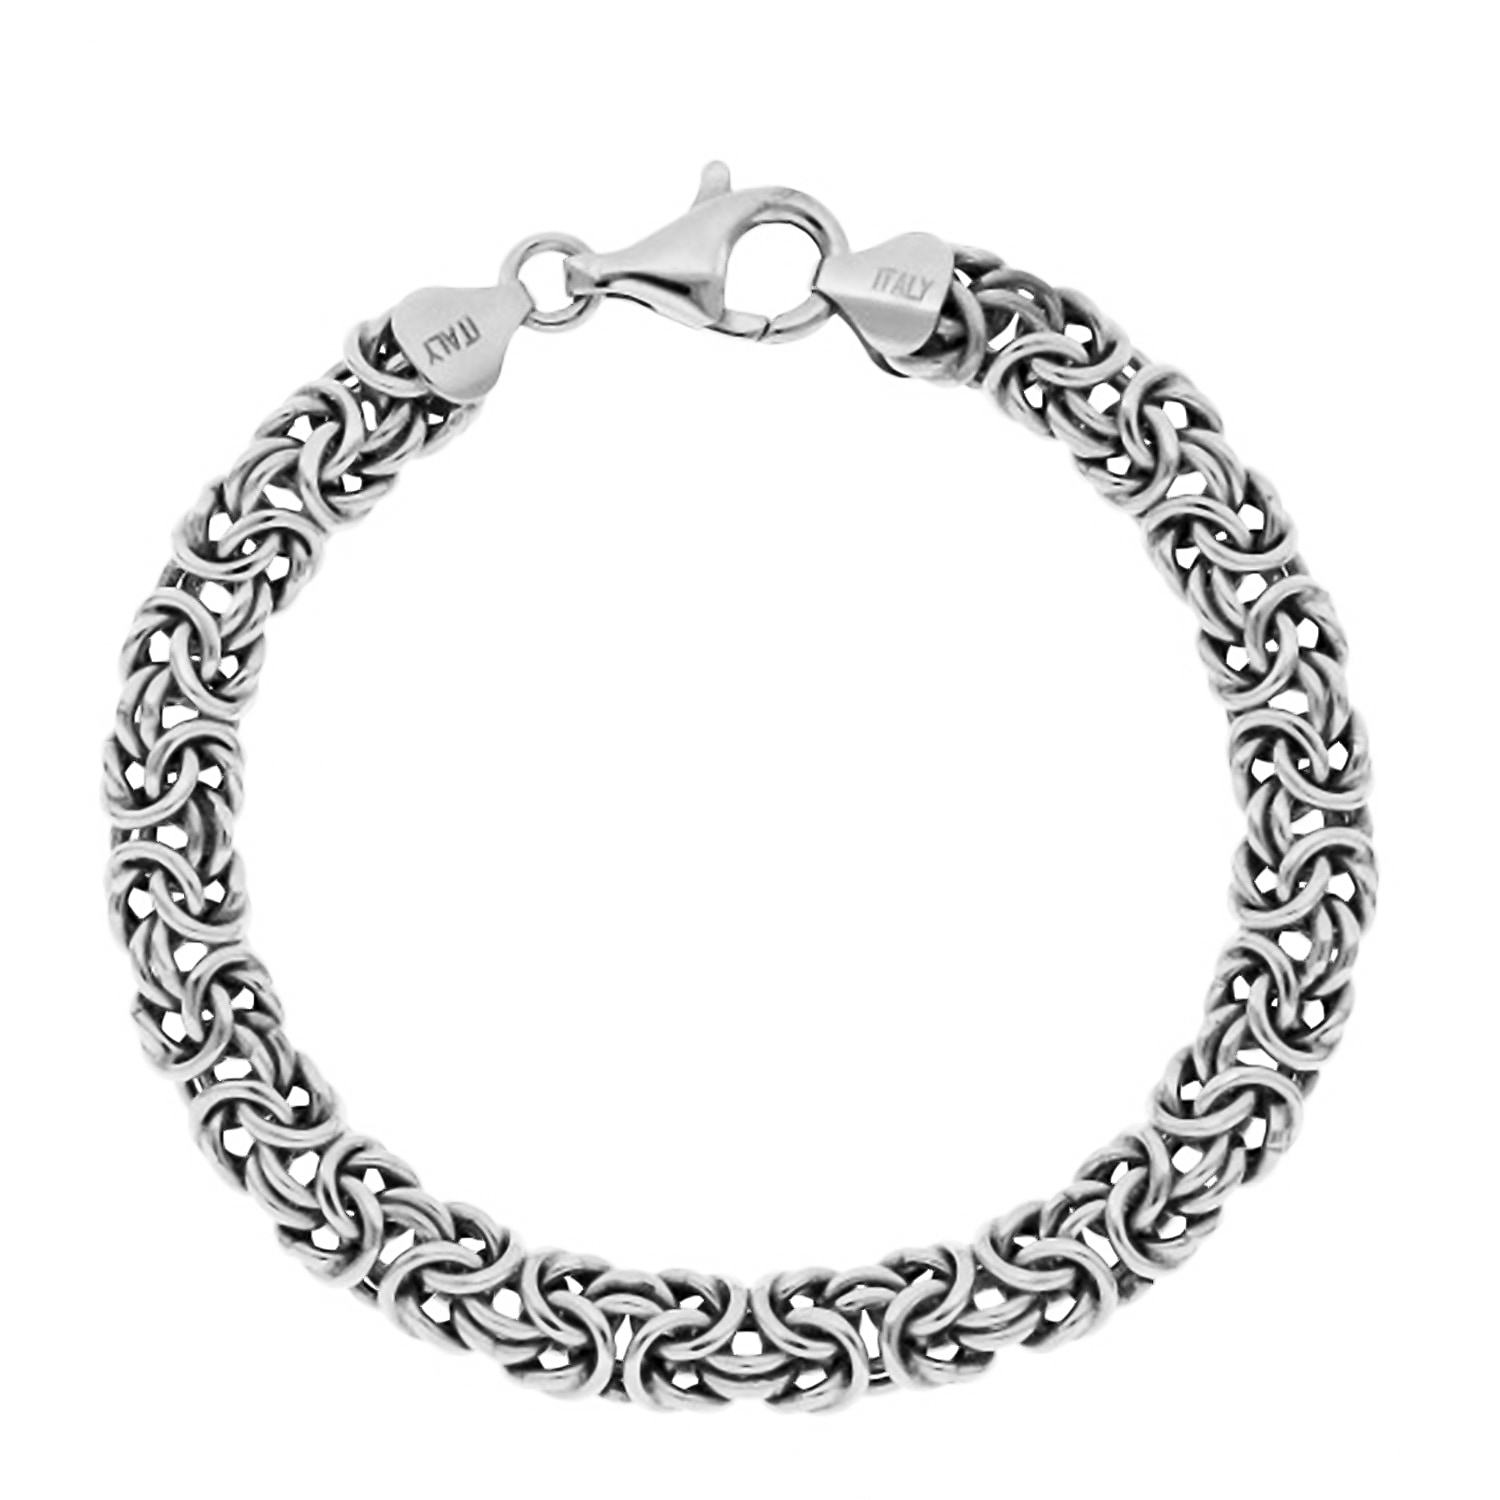 La Bella Italian Made Sterling Silver Byzantine Bracelet (Size - 8)